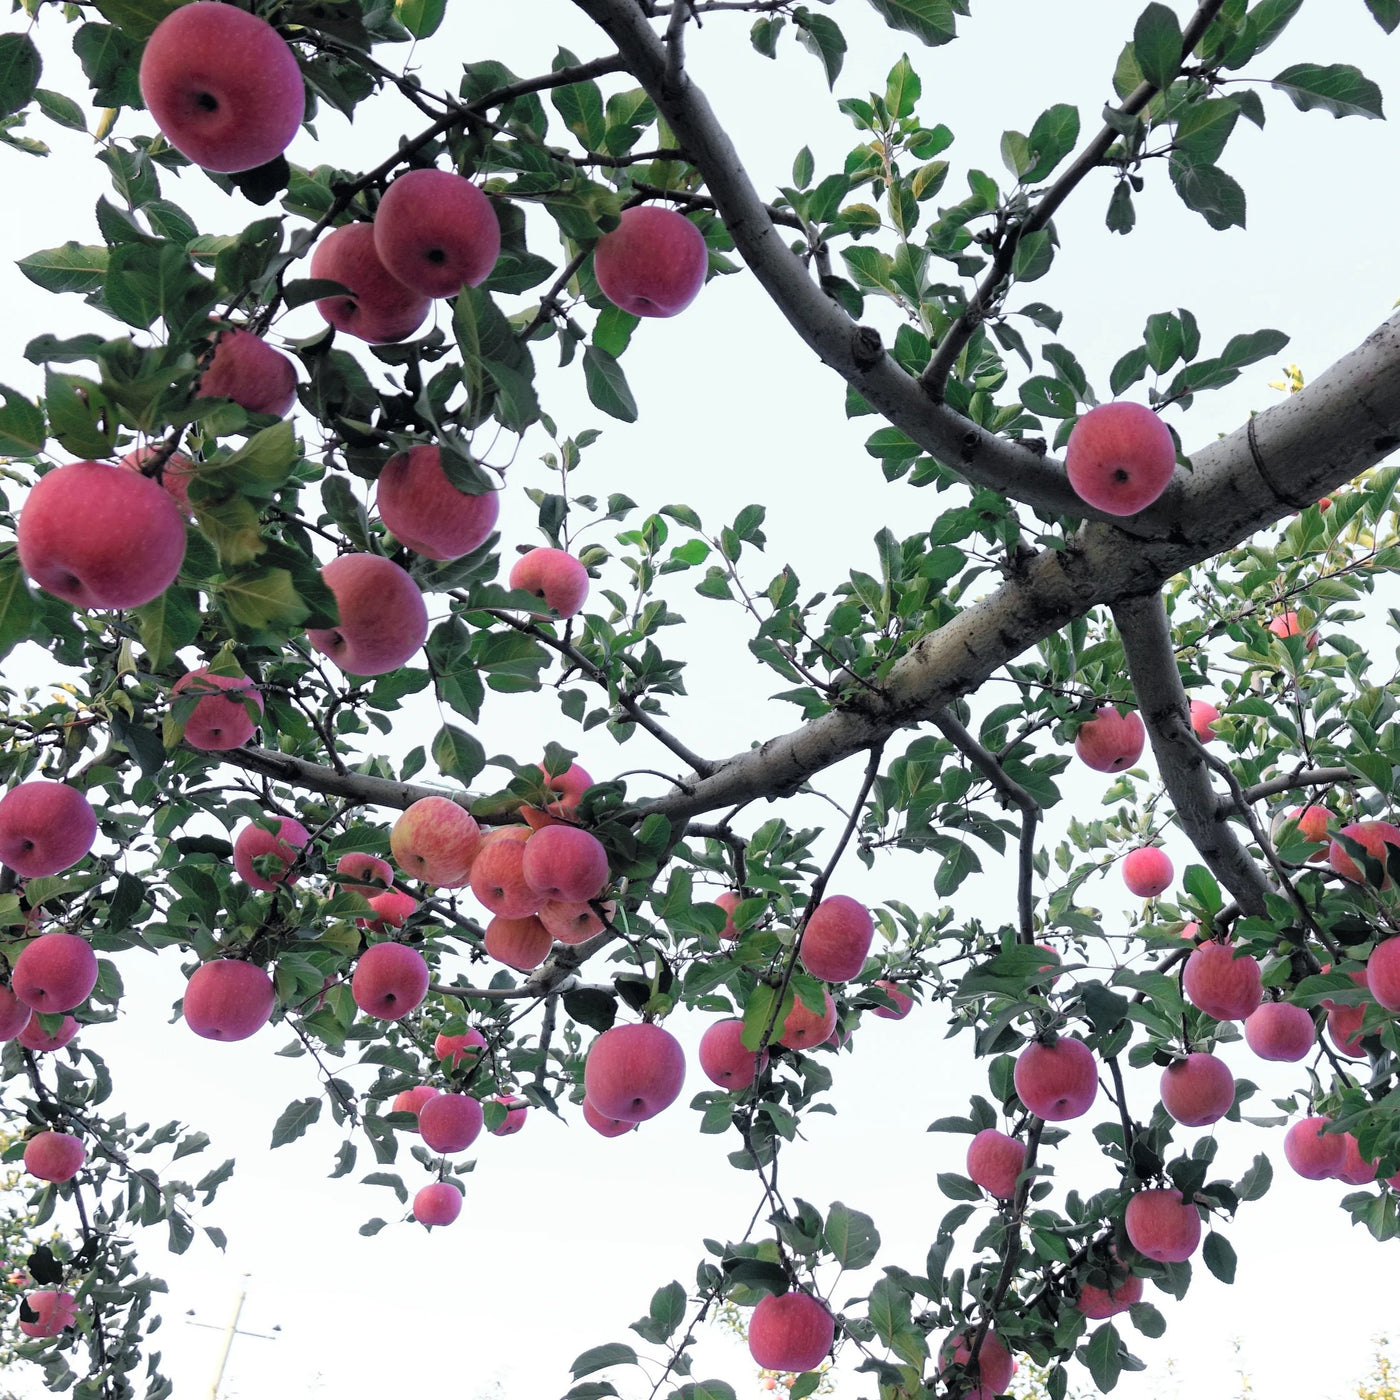 Red Fuji Apple Tree